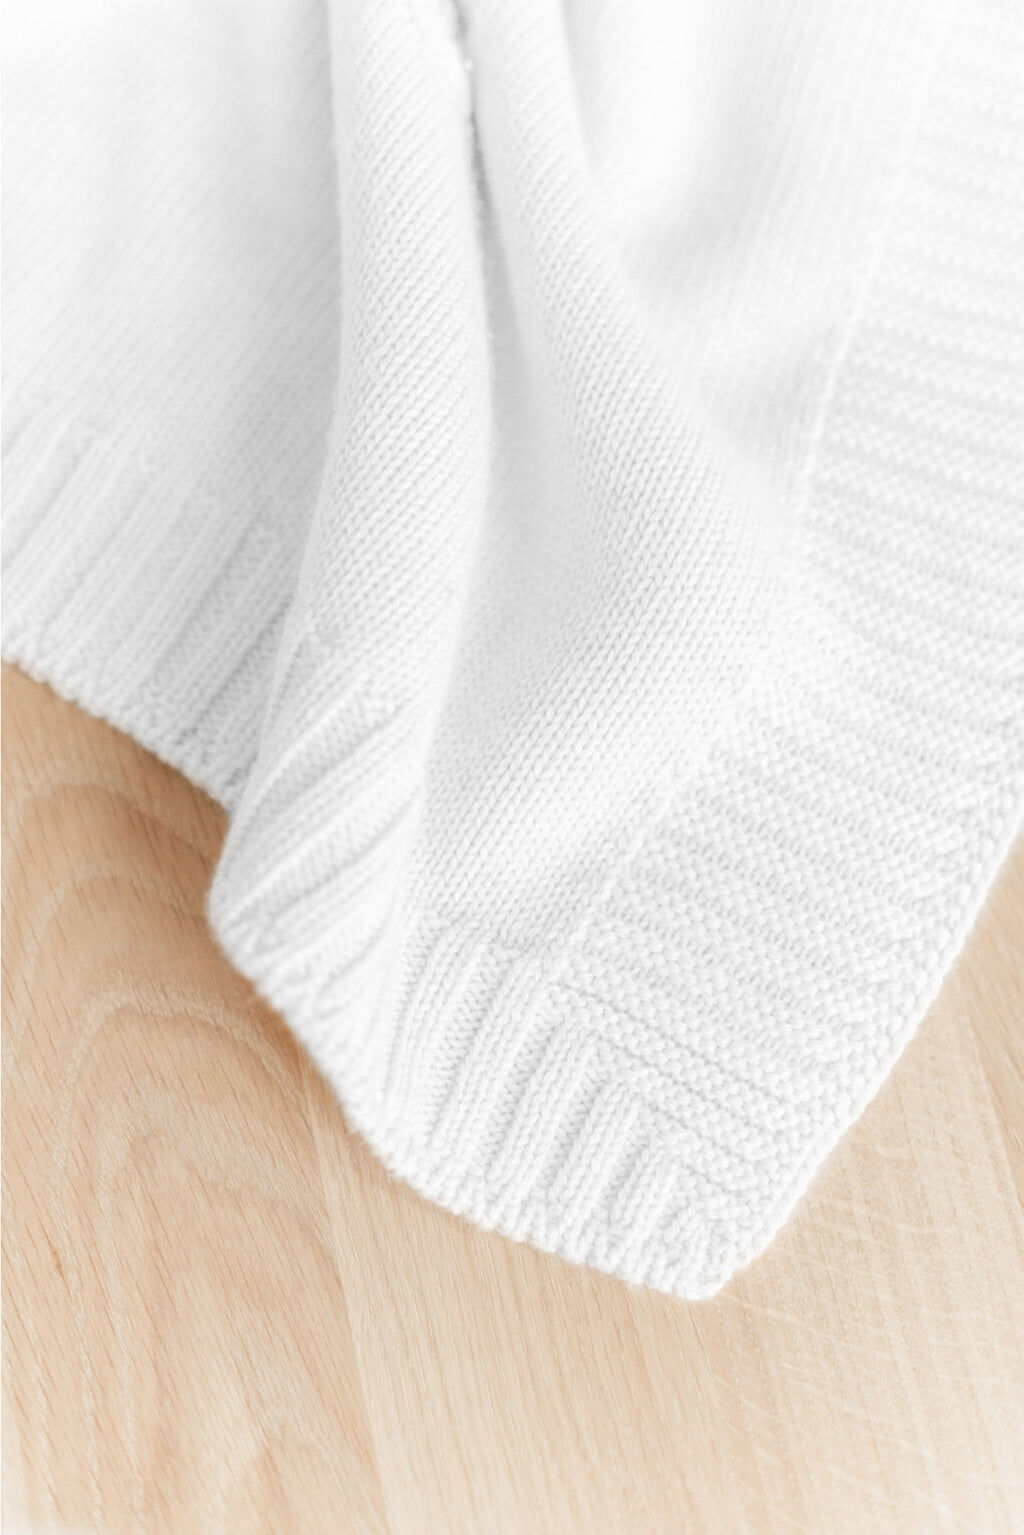 Blanket personalize - Wool ecru